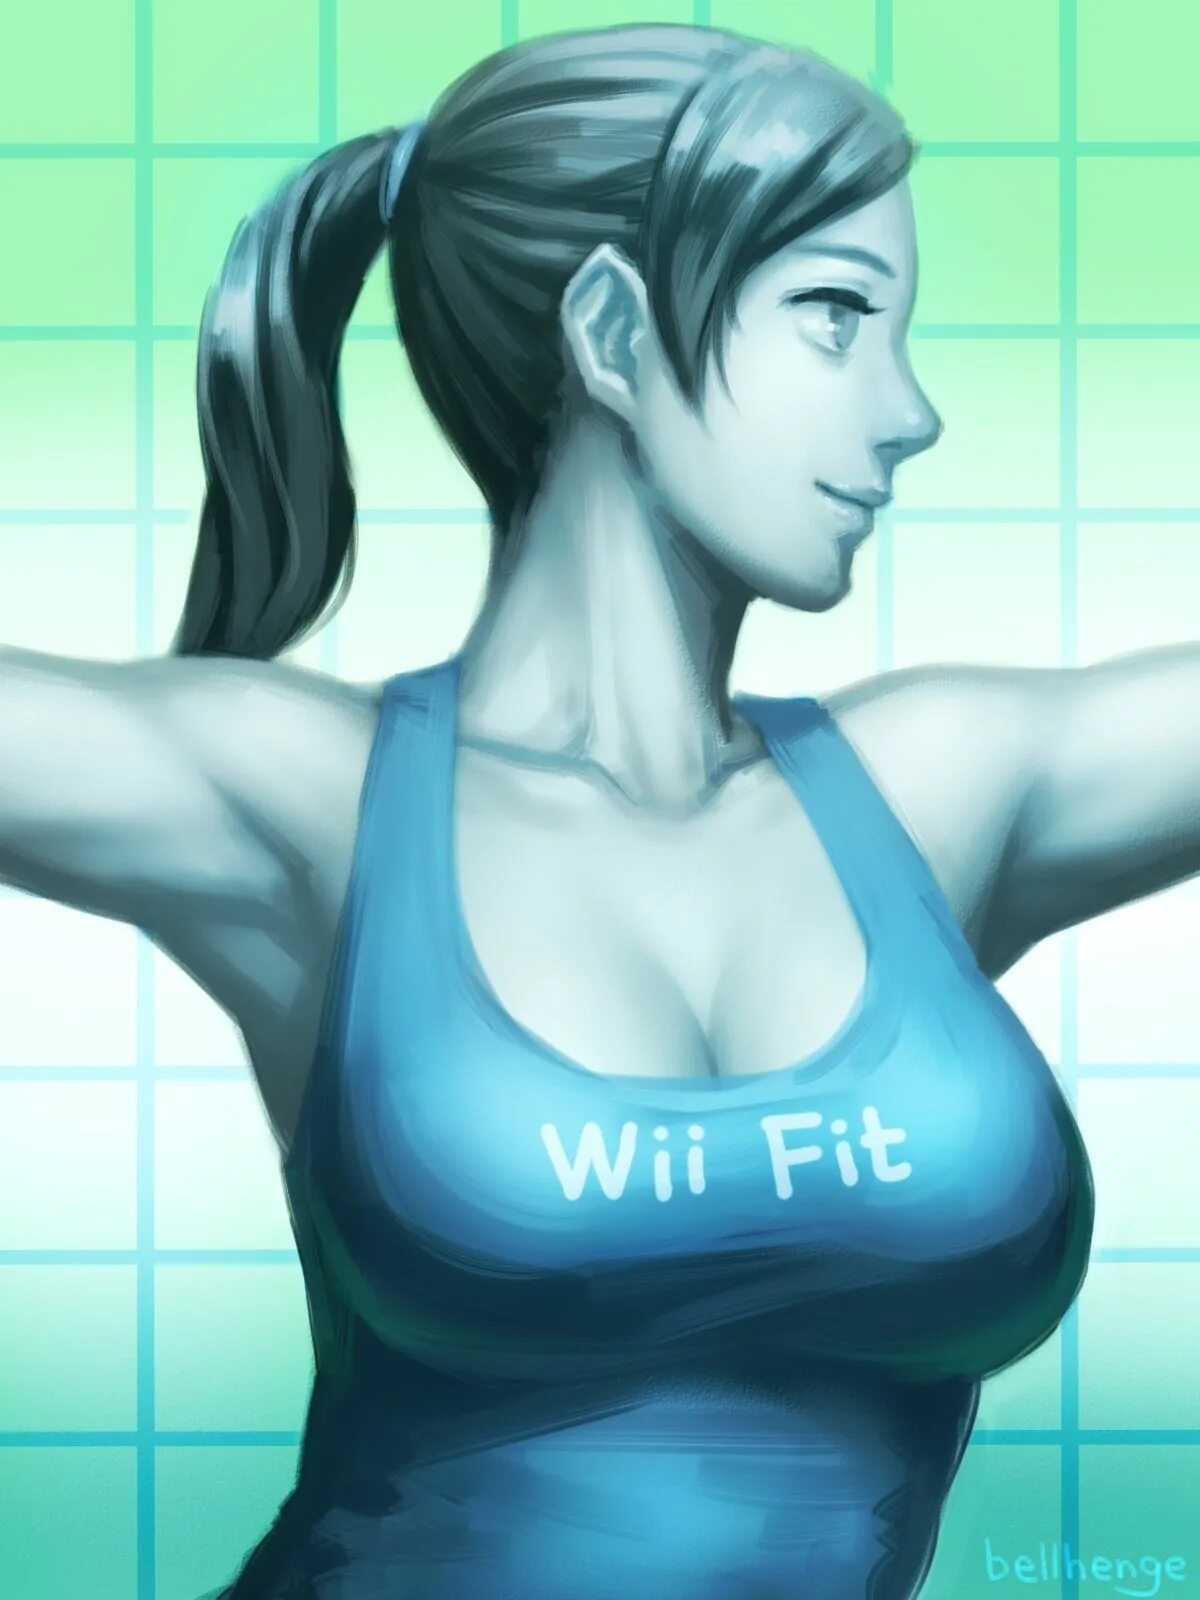 Wii Fit Trainer. Wii Fit Trainer Art. Fat Wii Fit Trainer. Nintendo Wii Fit Trainer.